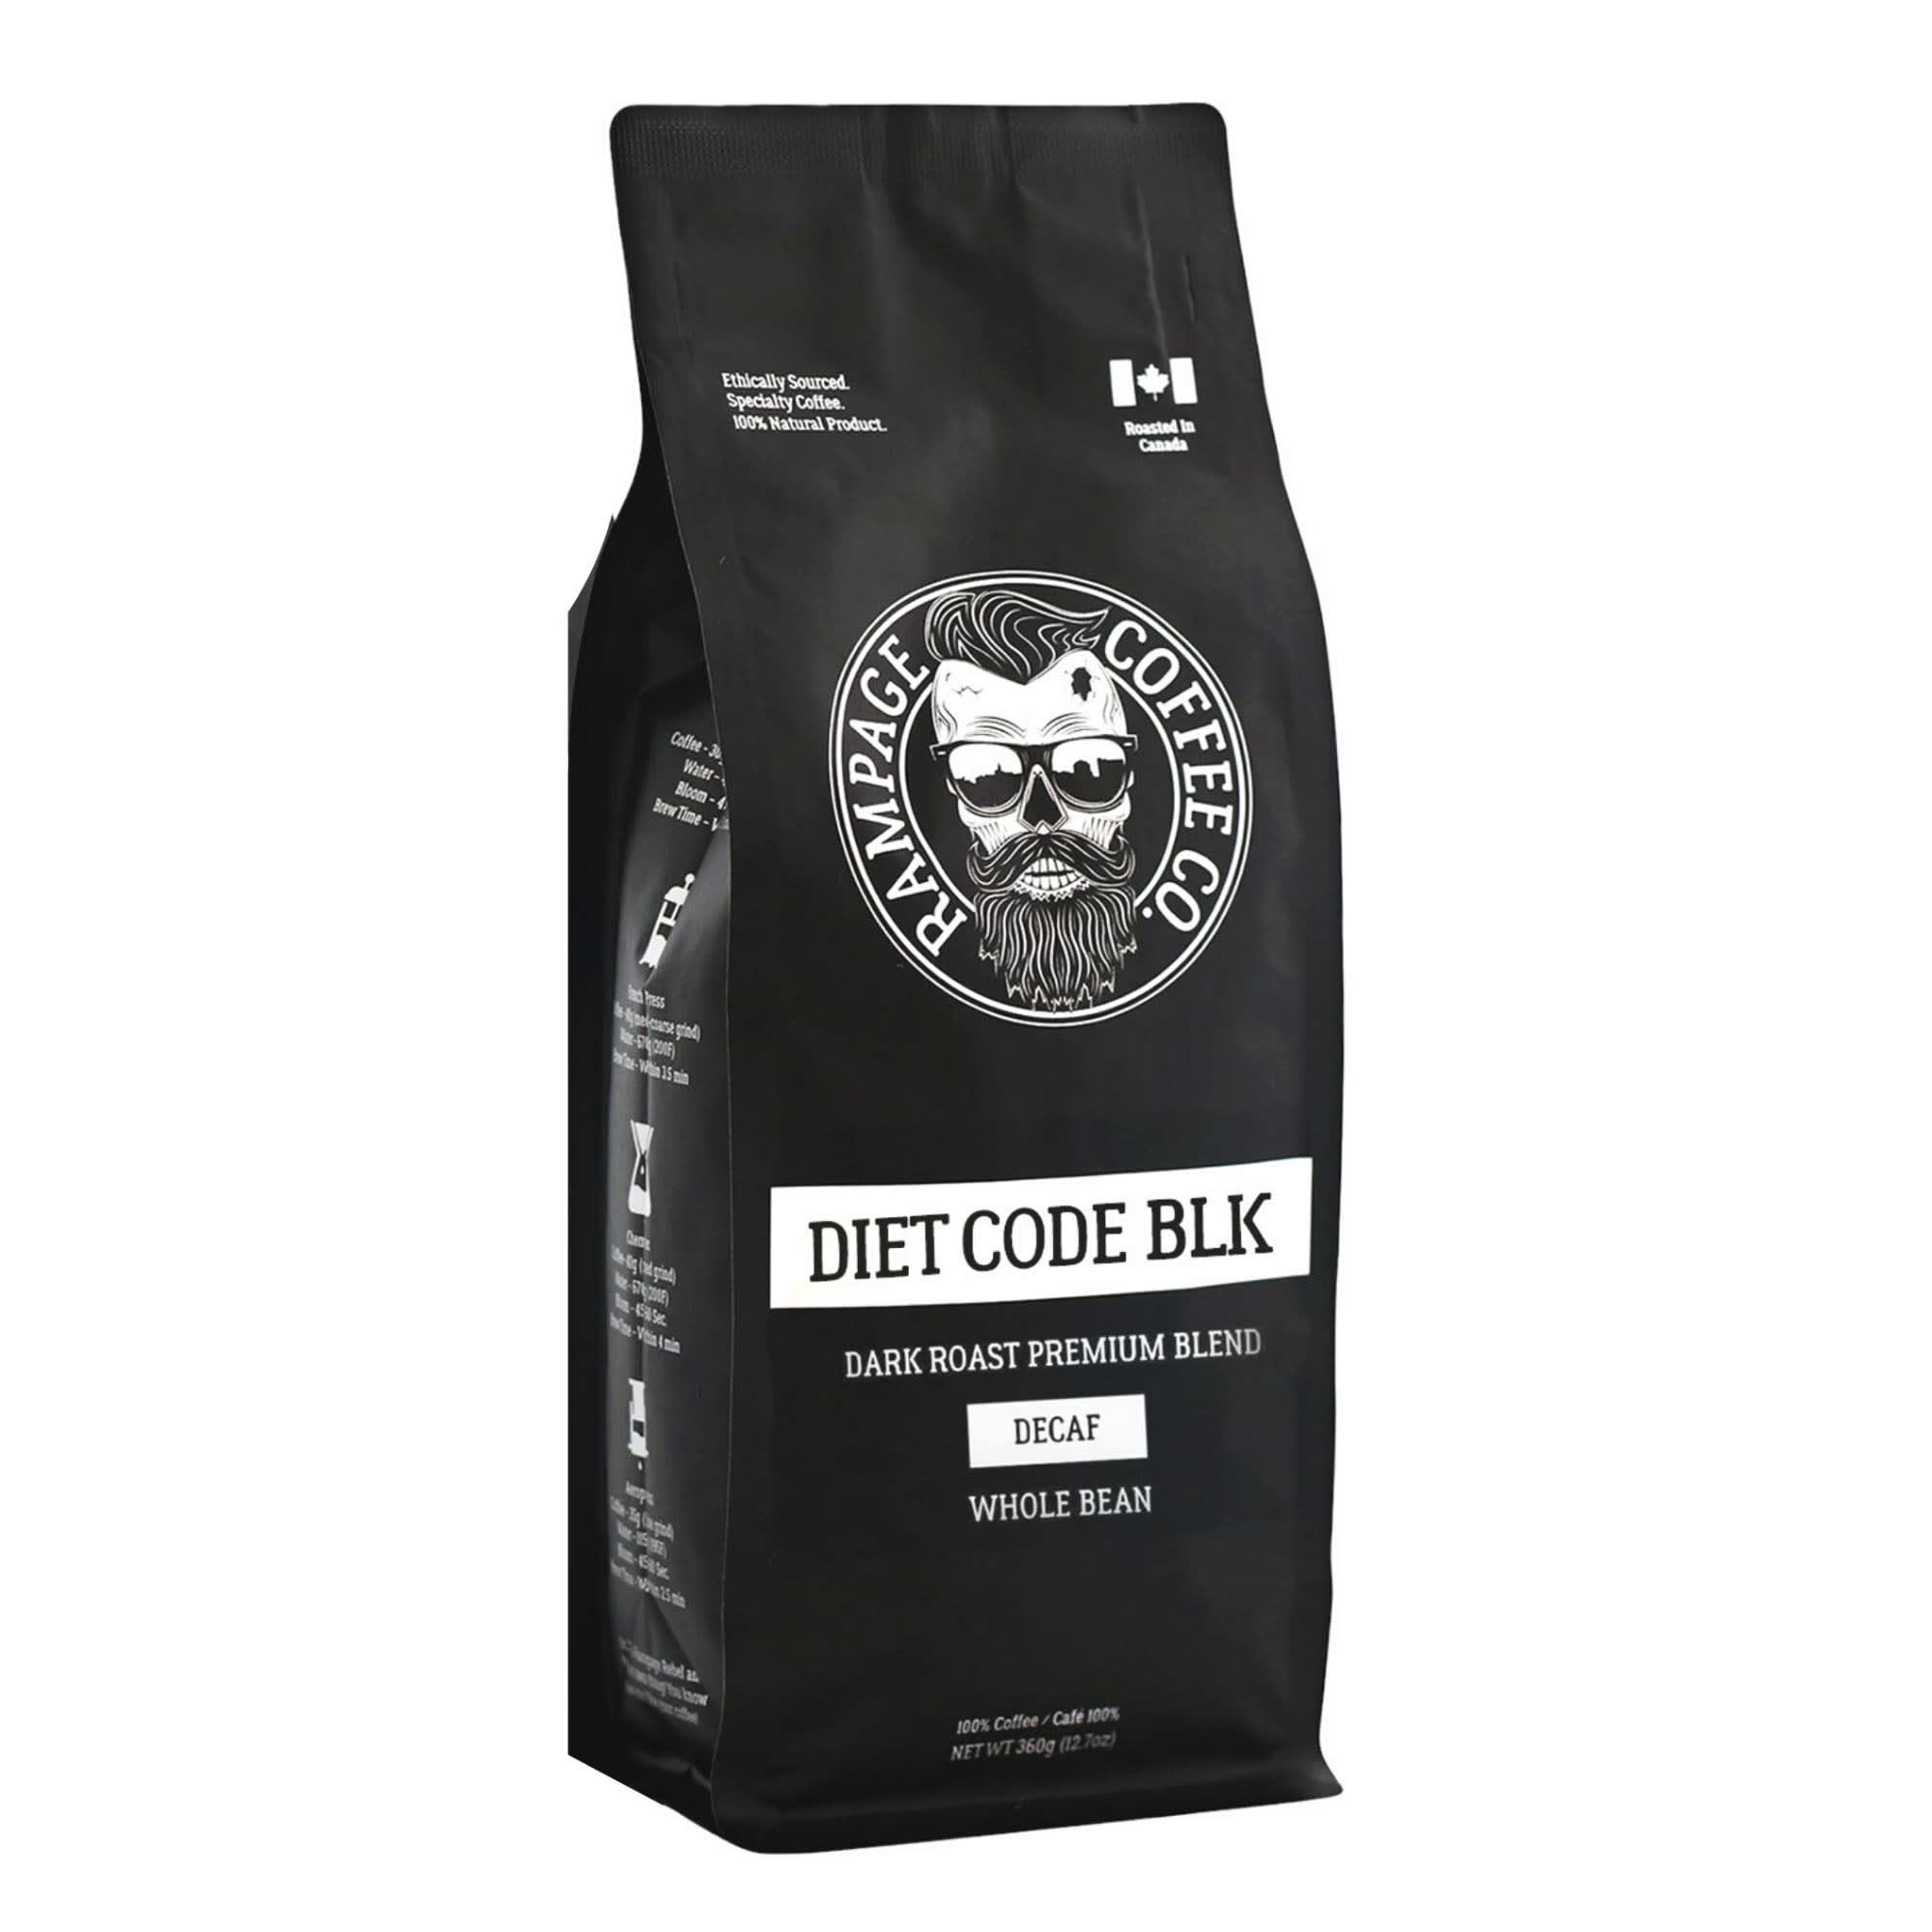 Rampage Coffee Co. DIET CODE BLK Decaf Dark Roast Premium Blend Coffee